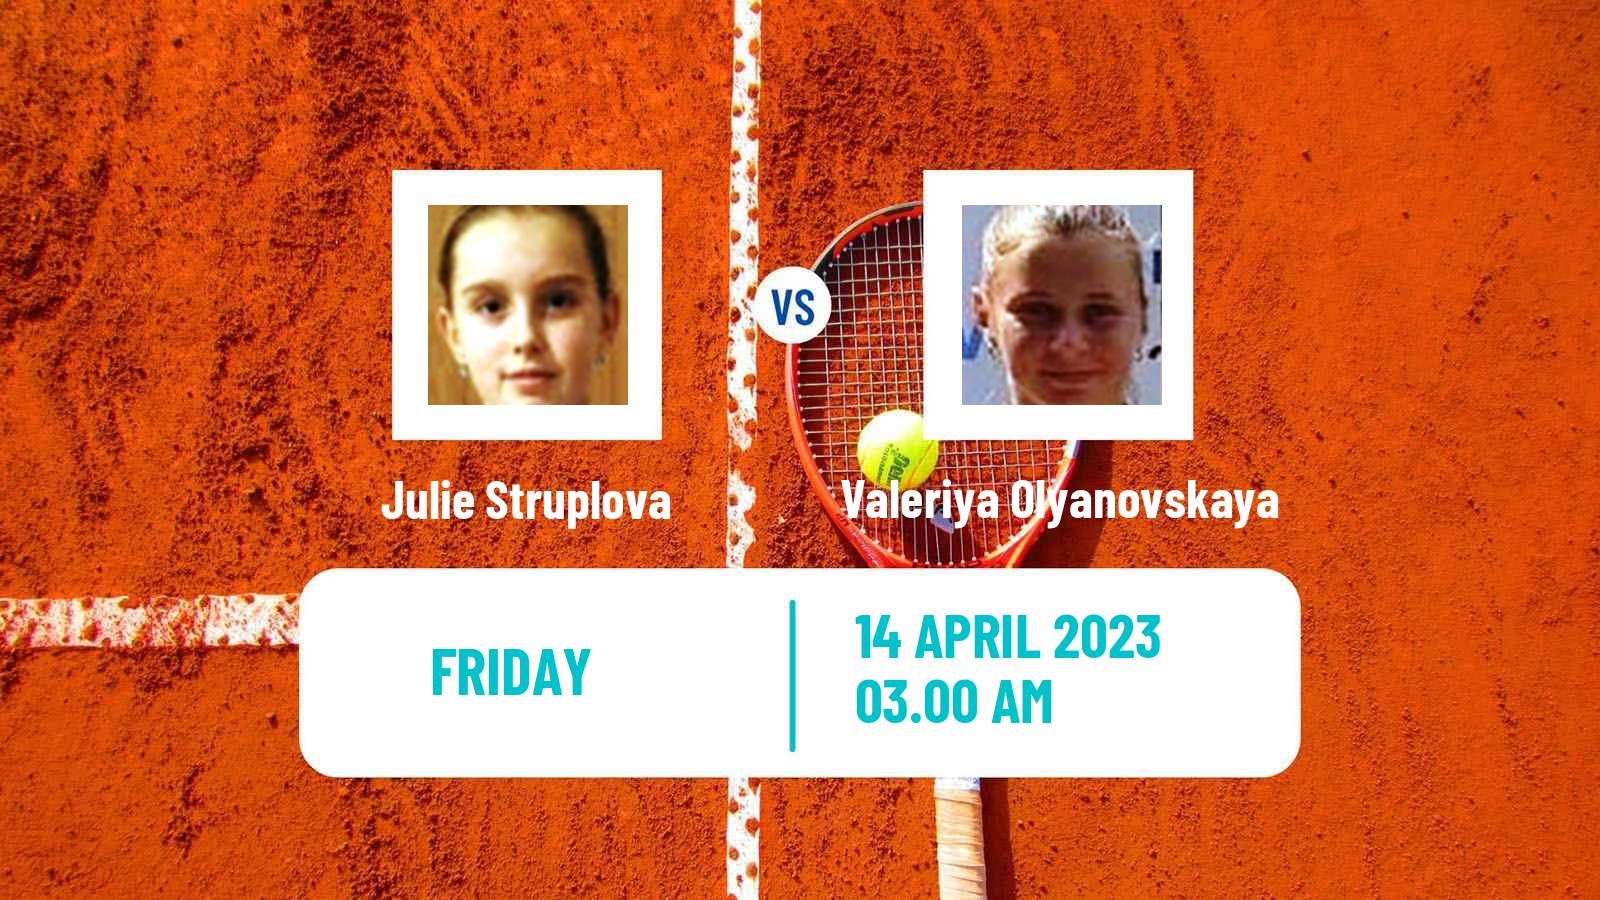 Tennis ITF Tournaments Julie Struplova - Valeriya Olyanovskaya